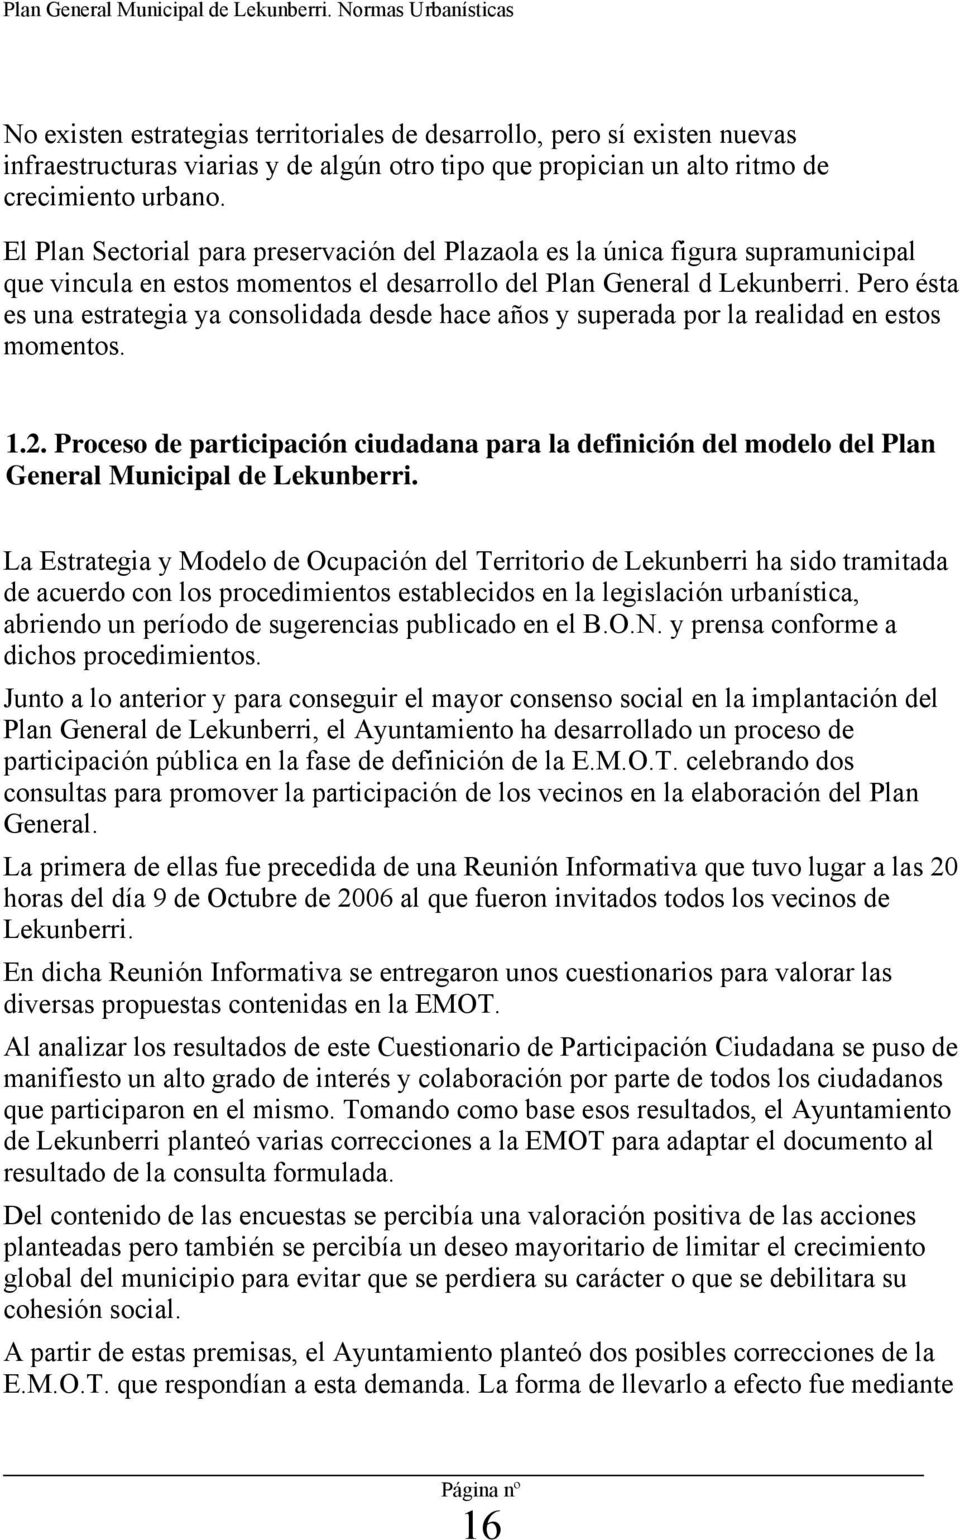 El Plan Sectorial para preservación del Plazaola es la única figura supramunicipal que vincula en estos momentos el desarrollo del Plan General d Lekunberri.